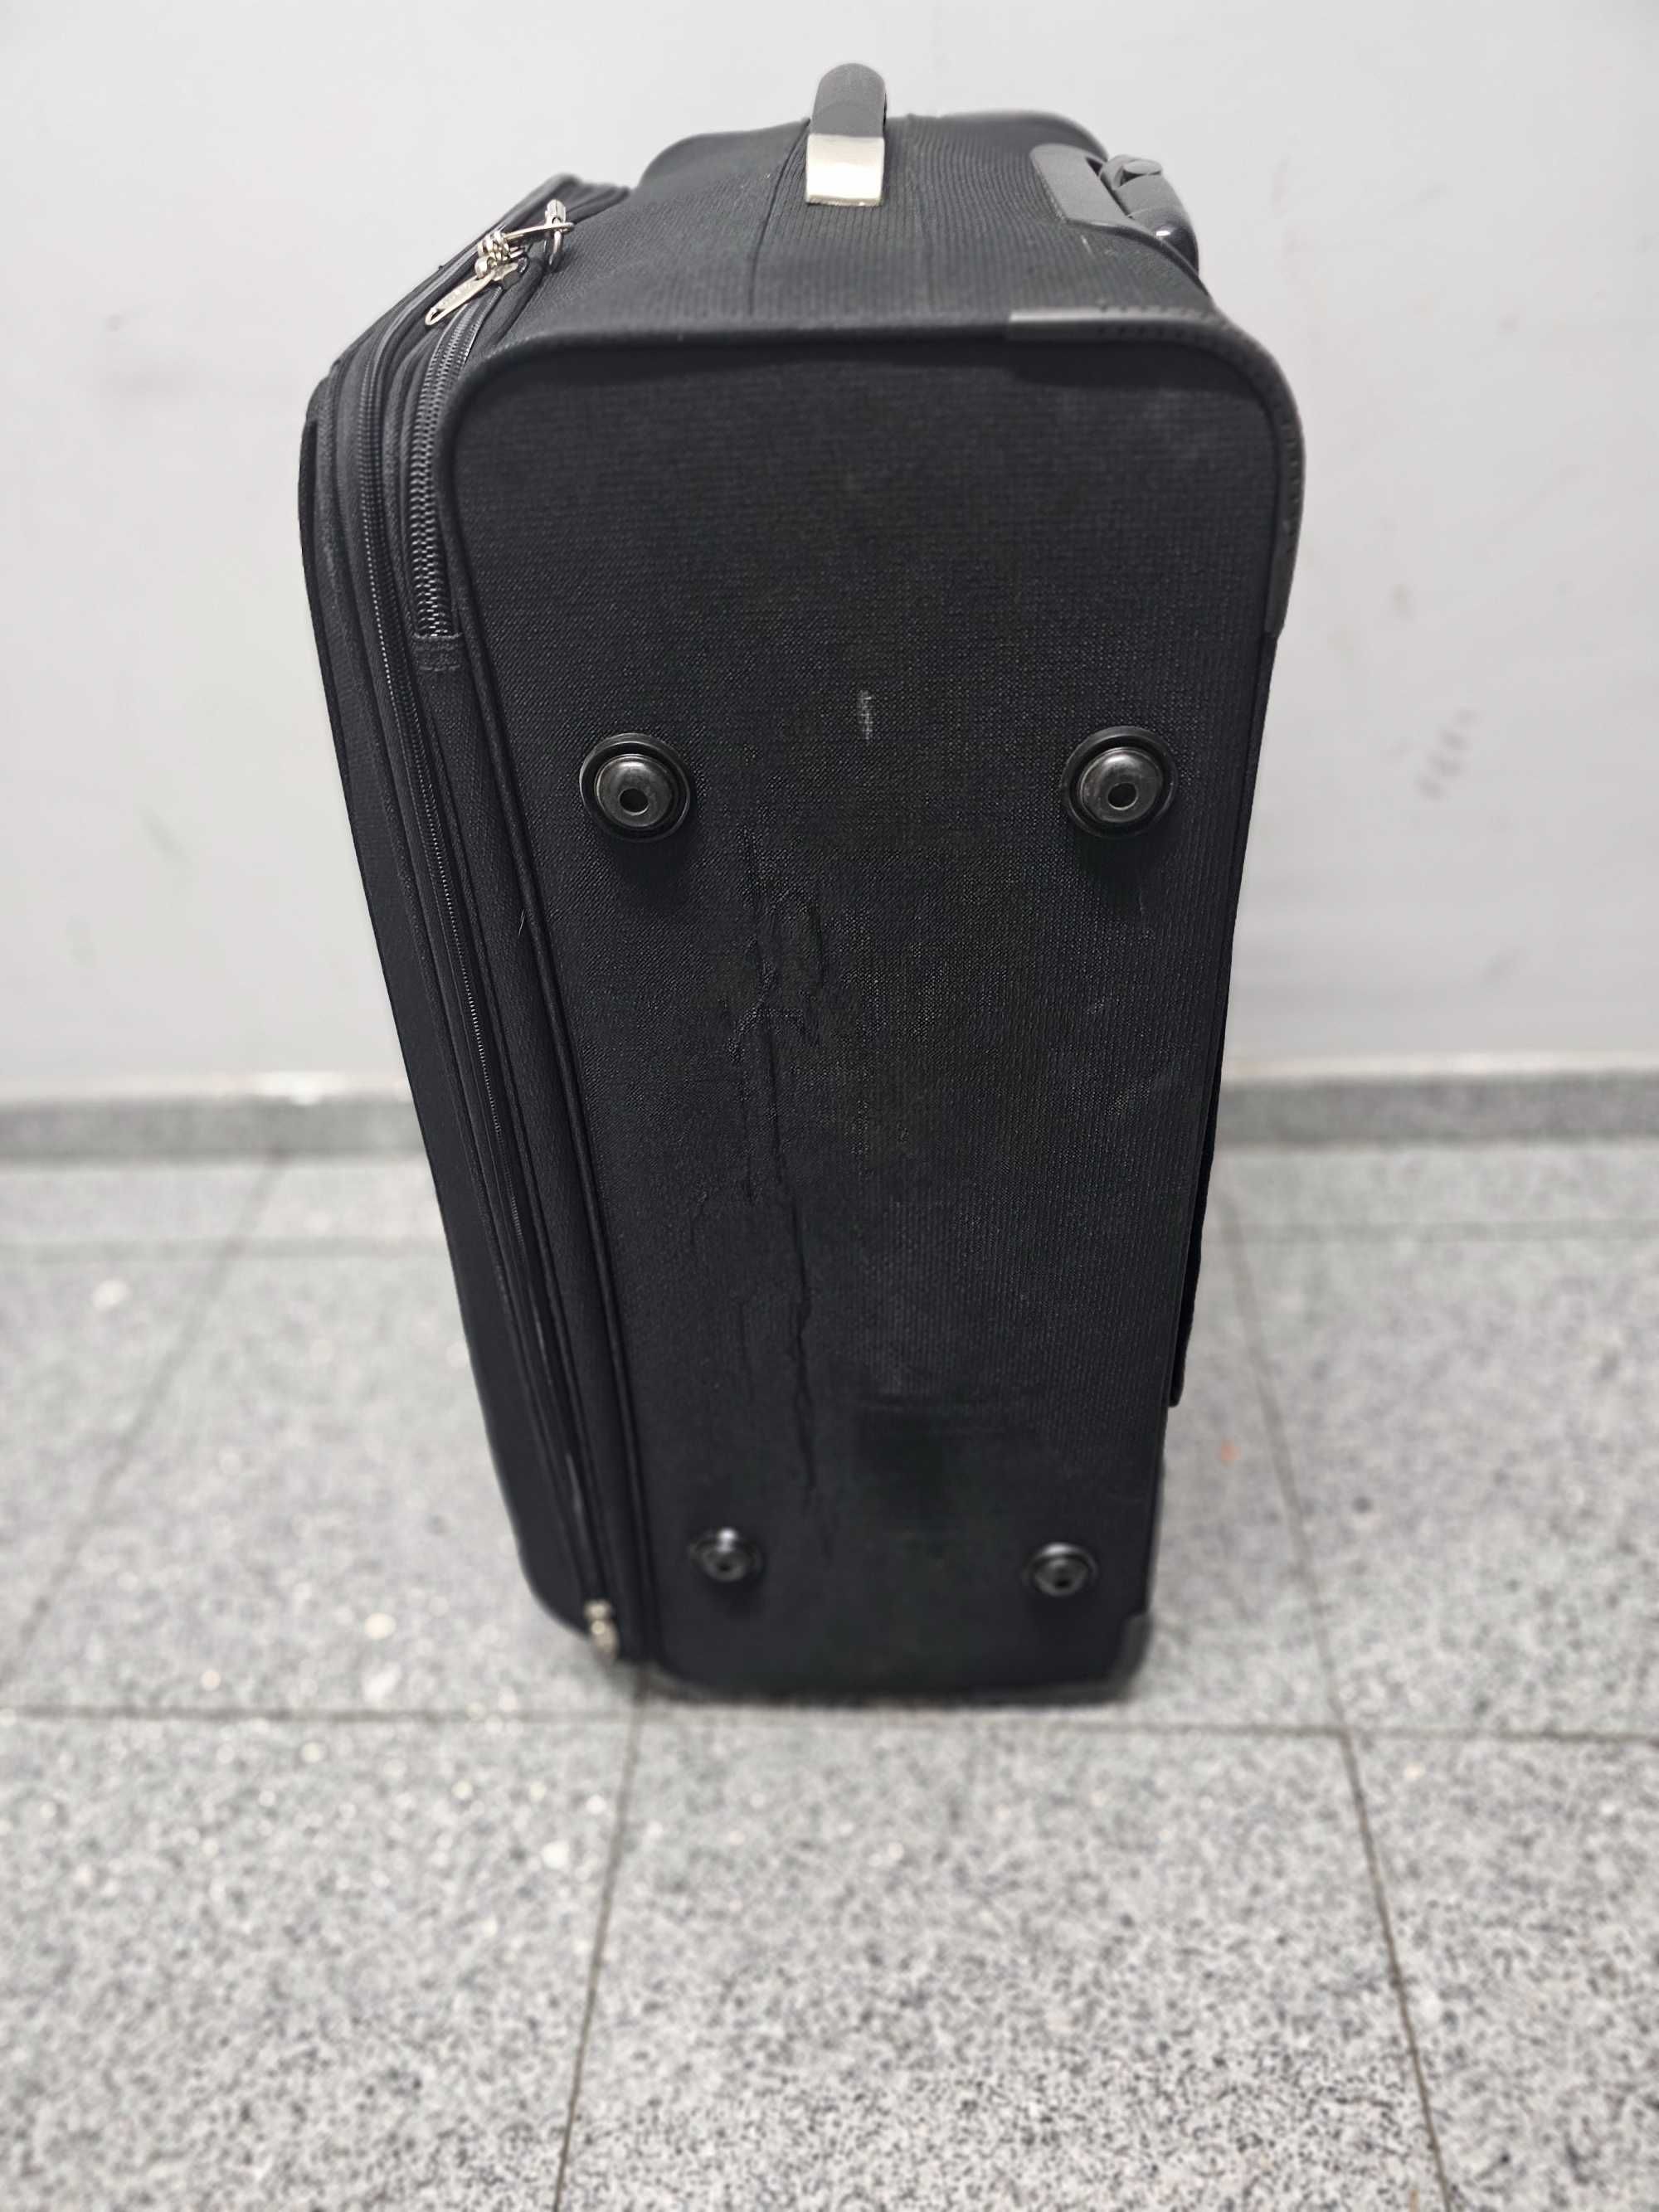 Куфари за пътуване